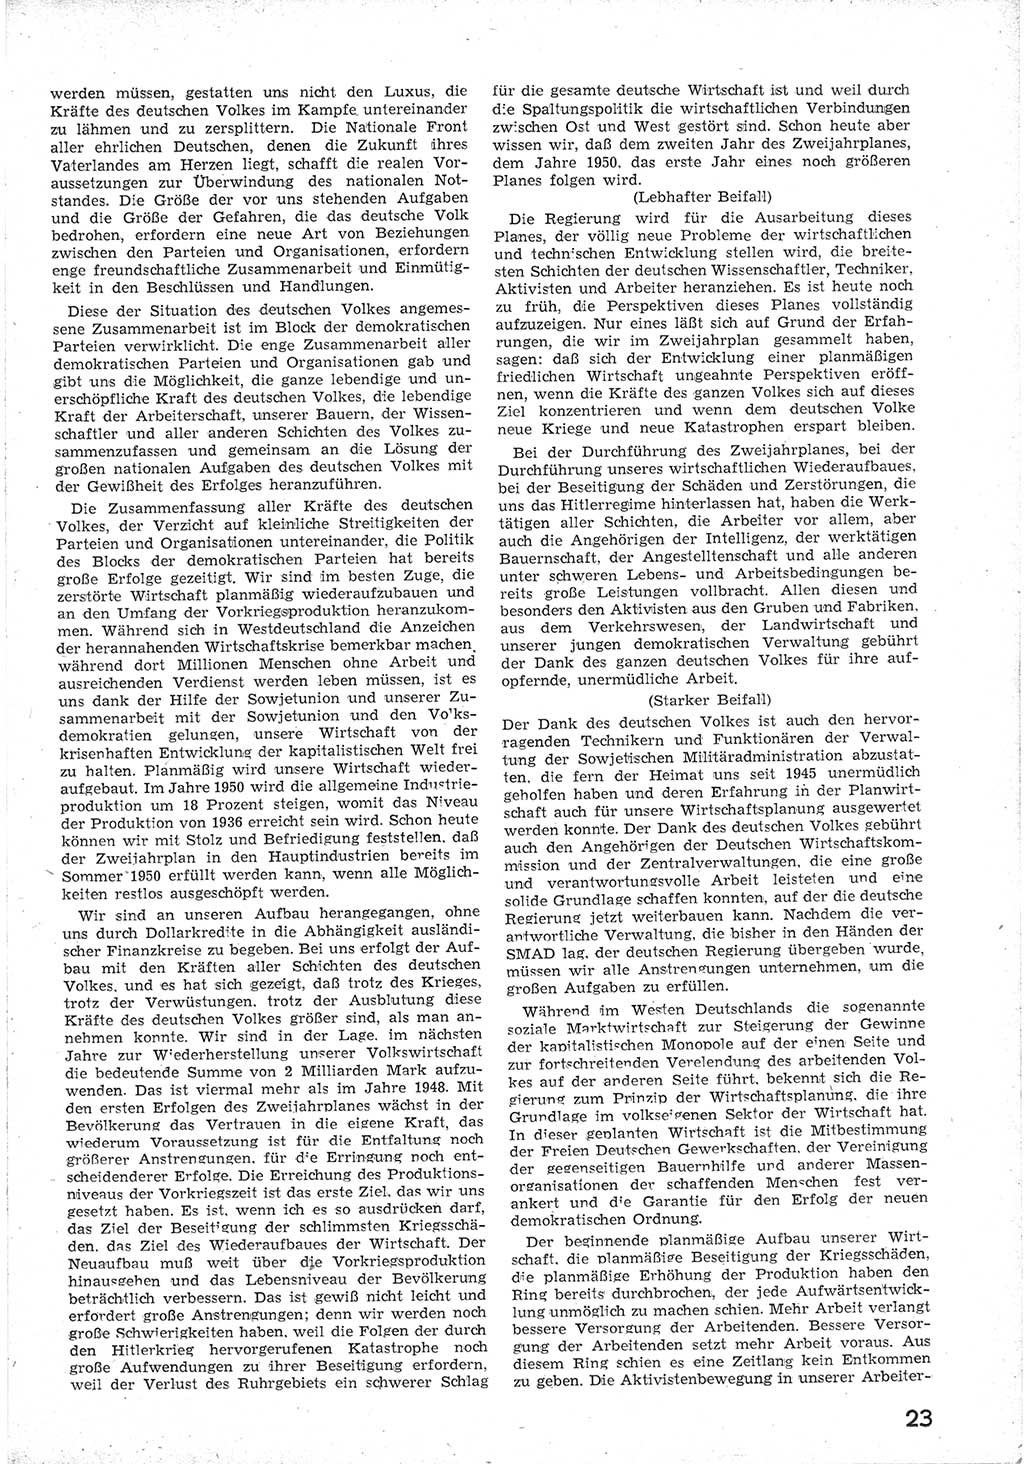 Provisorische Volkskammer (VK) der Deutschen Demokratischen Republik (DDR) 1949-1950, Dokument 35 (Prov. VK DDR 1949-1950, Dok. 35)